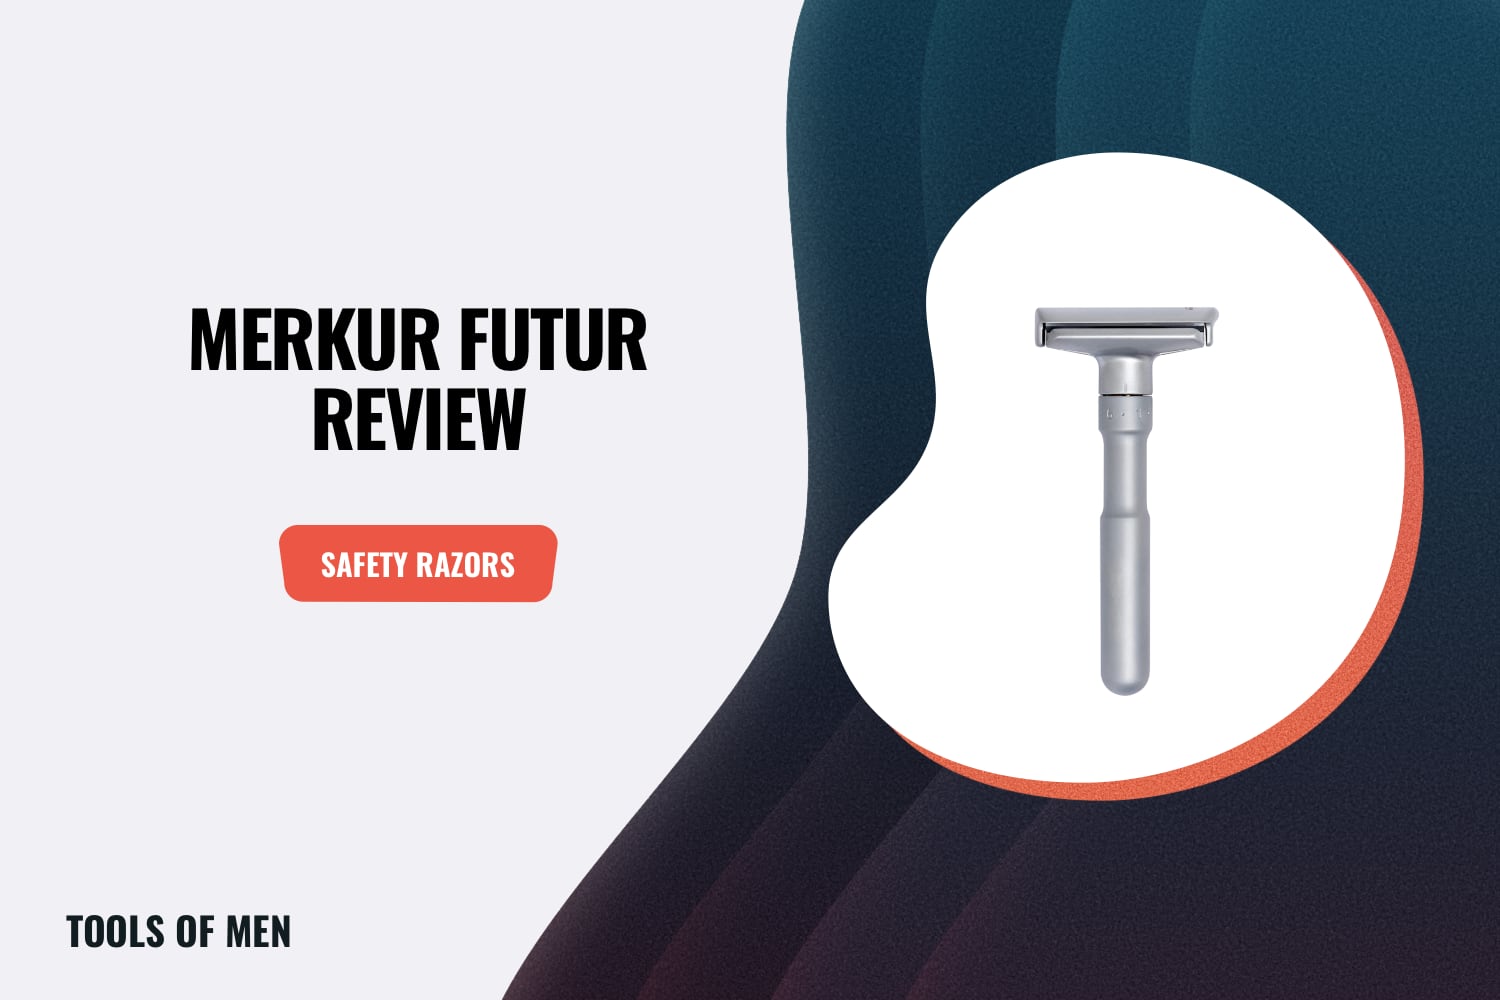 Merkur Futur Review feature image